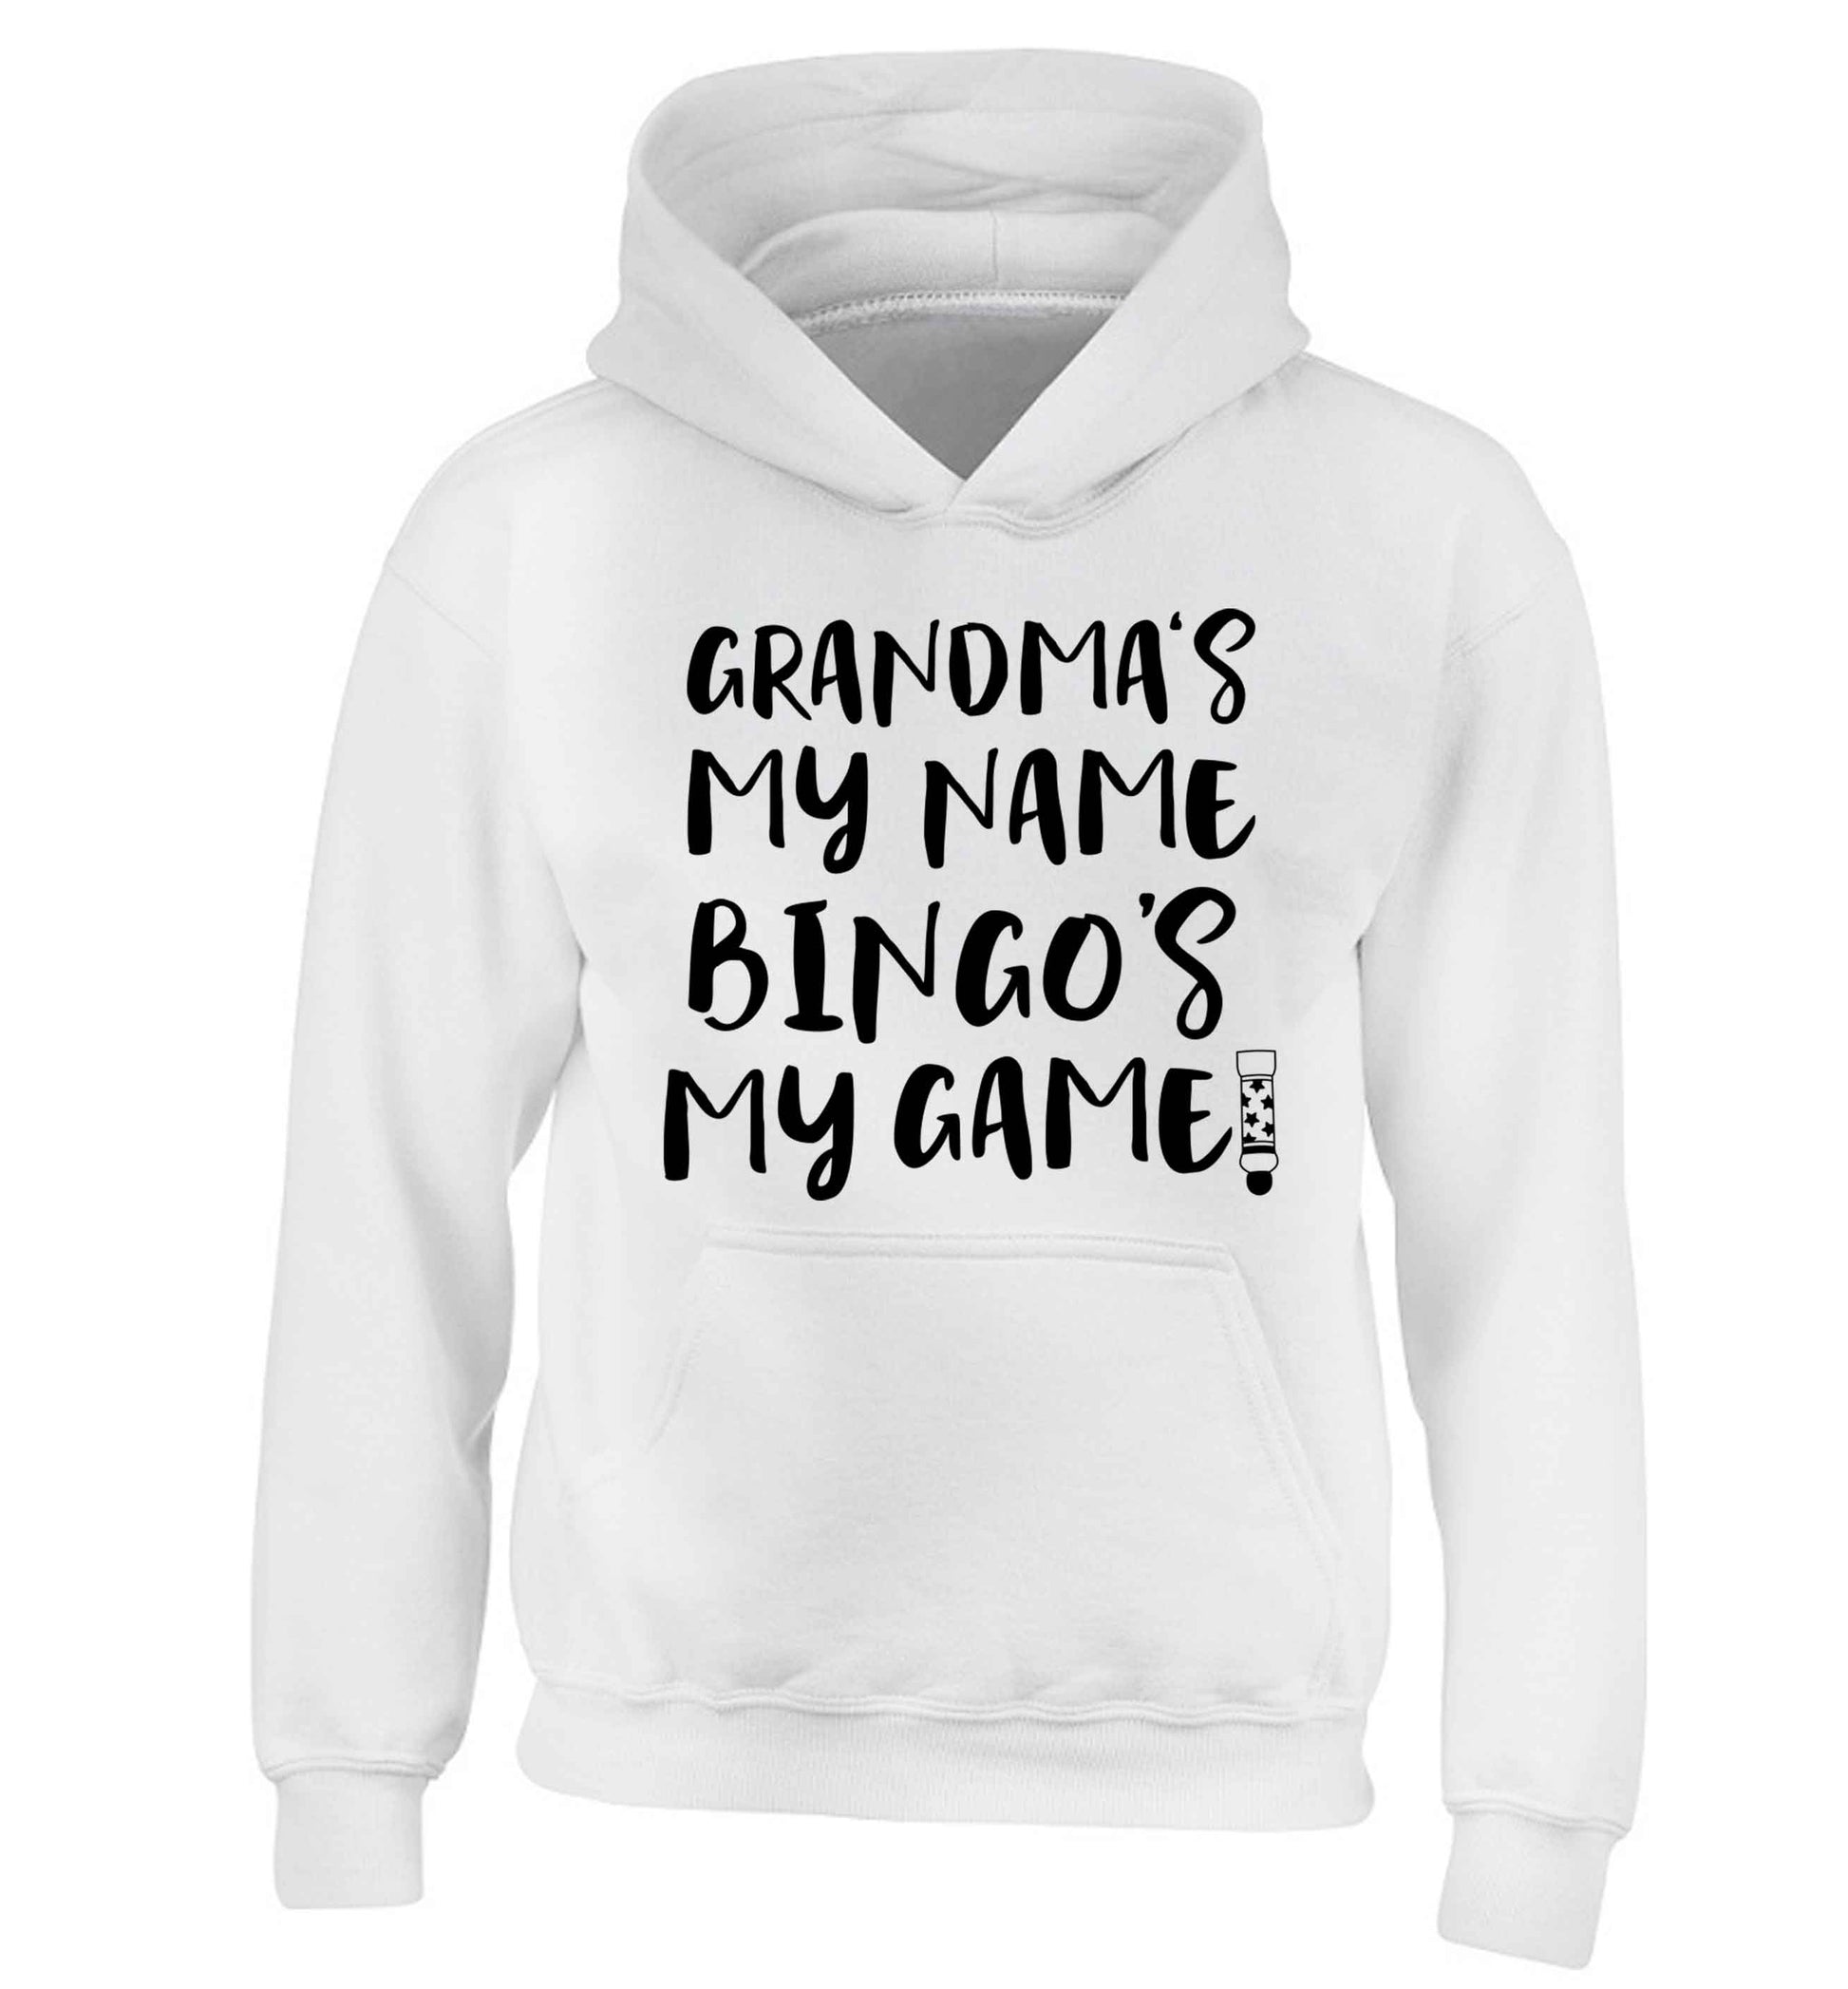 Grandma's my name bingo's my game! children's white hoodie 12-13 Years